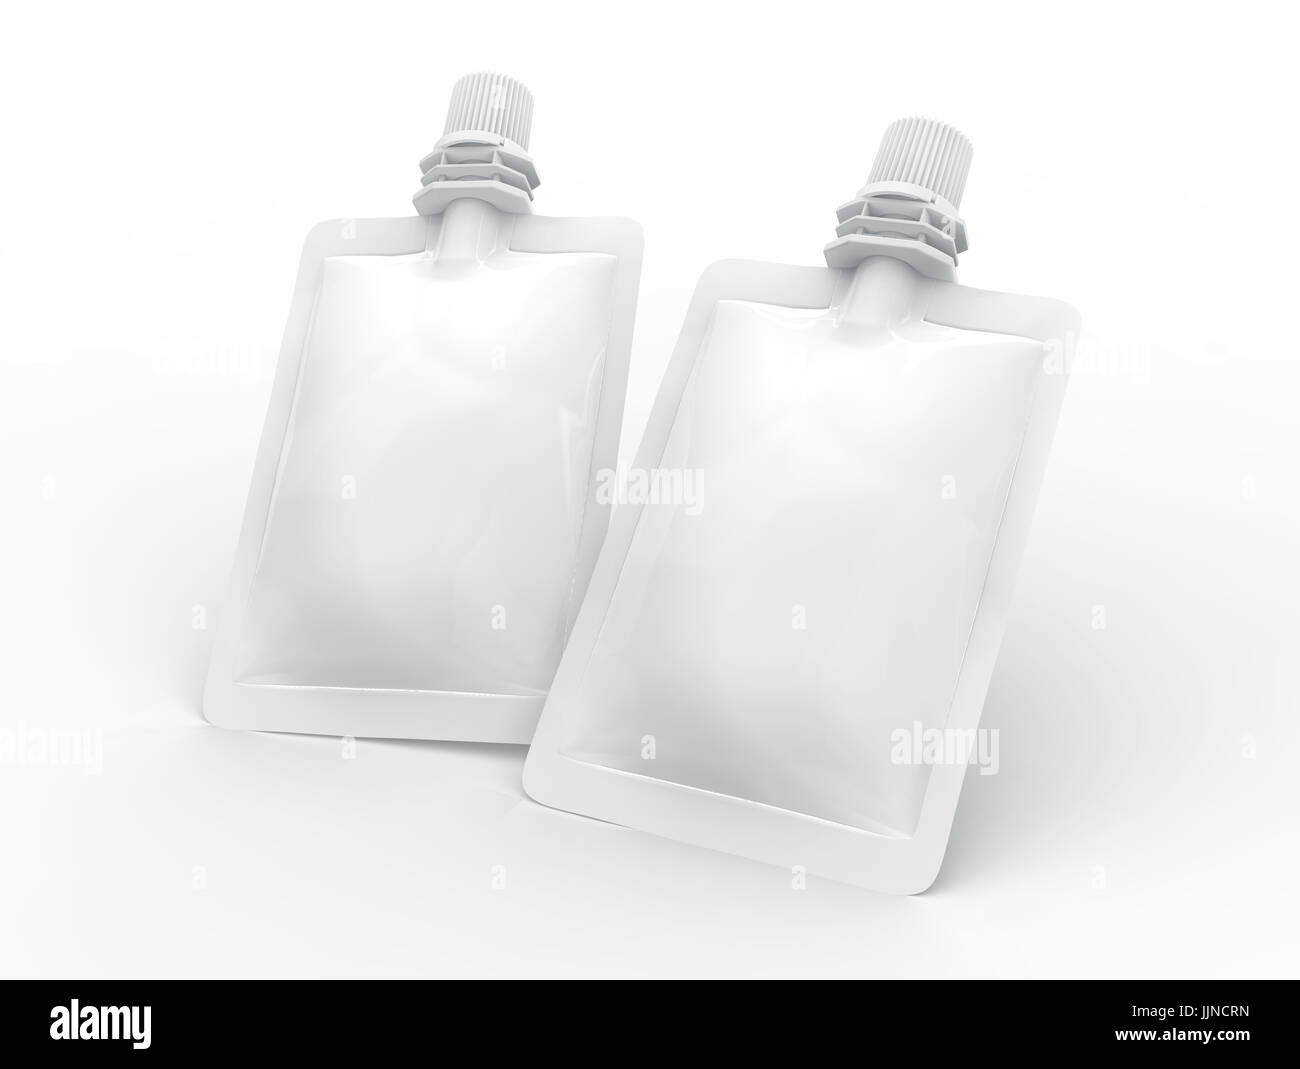 Folienbeutel für Getränk, leere Folie Tasche Modell für Getränke Design in 3D-Rendering, zwei schwimmende Beutel versiegelt Stockfoto